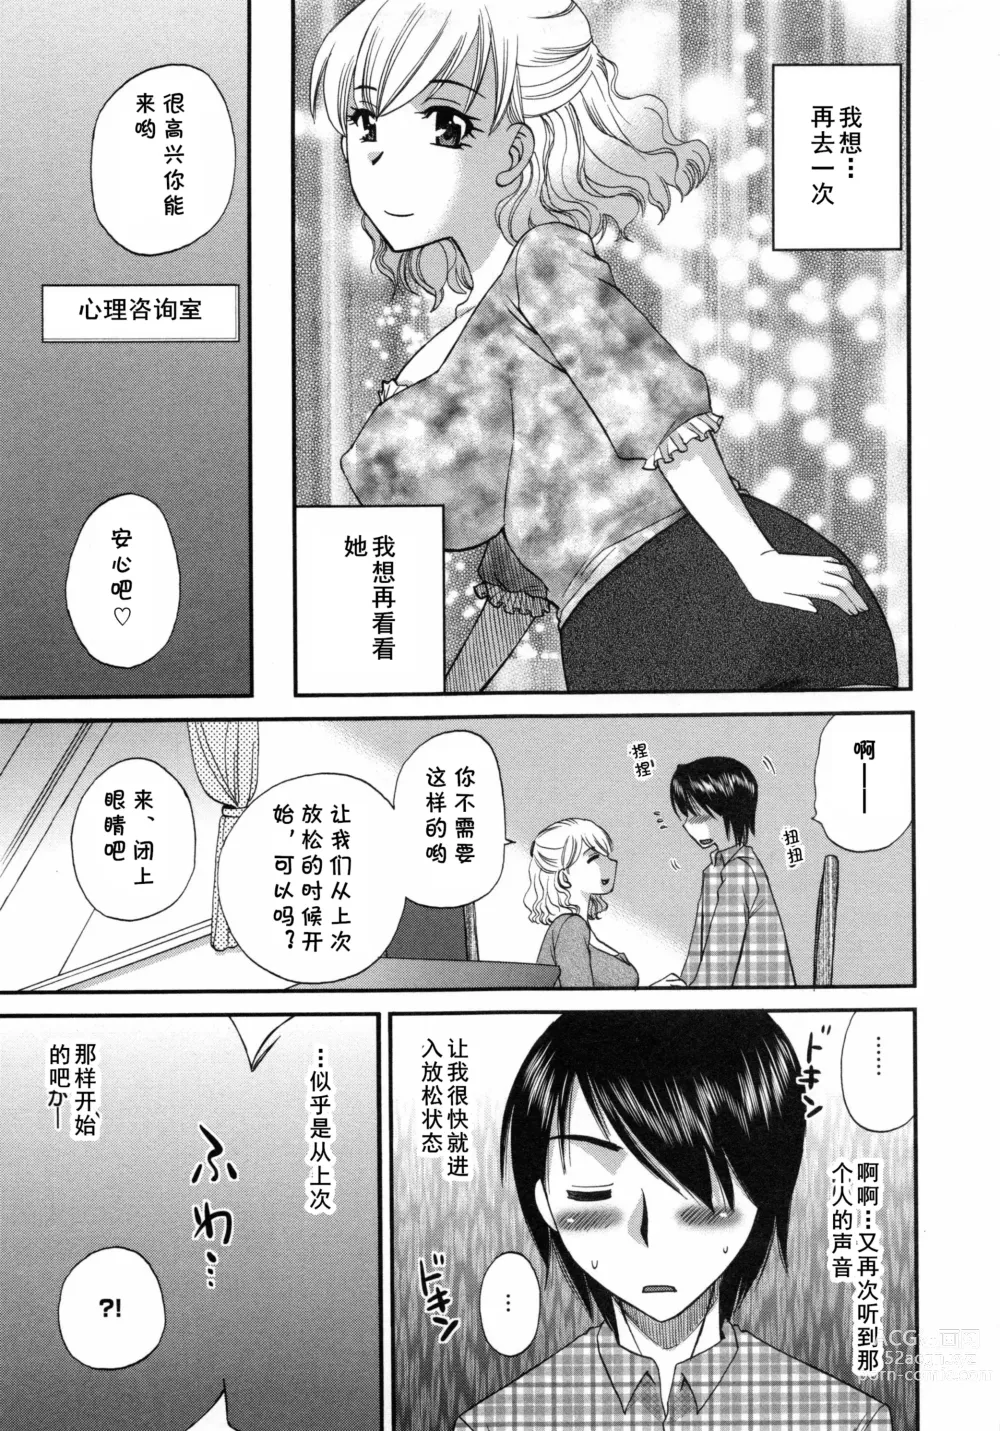 Page 5 of manga Aiyoku no Hakoniwa